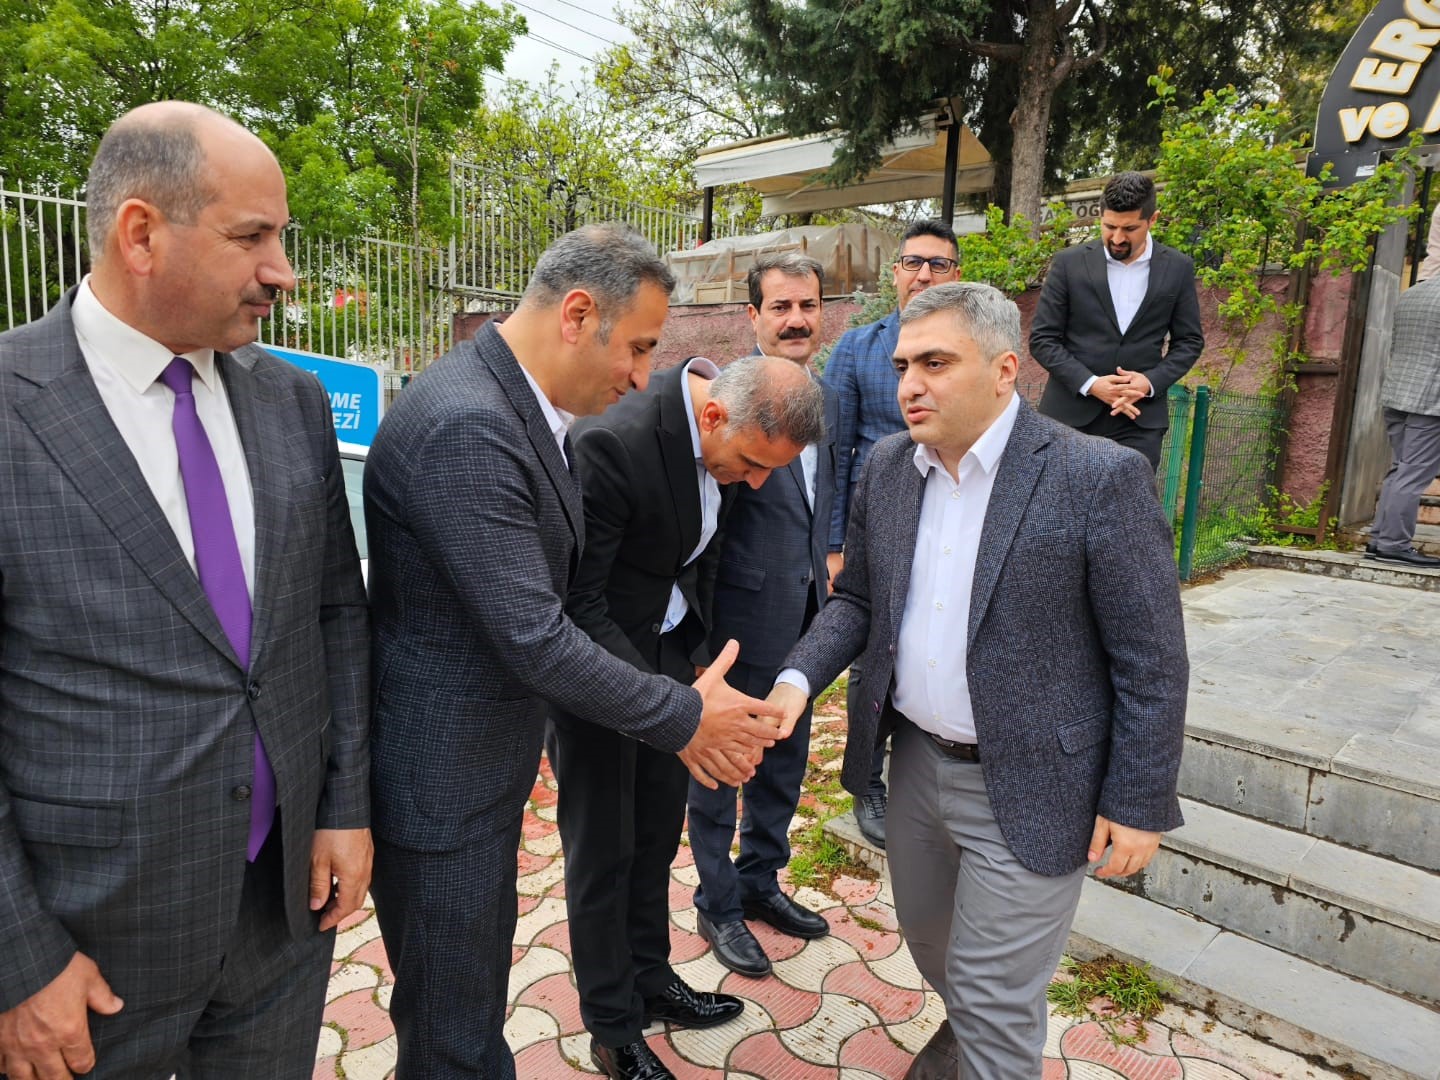 Ergani Kaymakamı vatandaş ve kamu kurum müdürleriyle bayramlaştı
